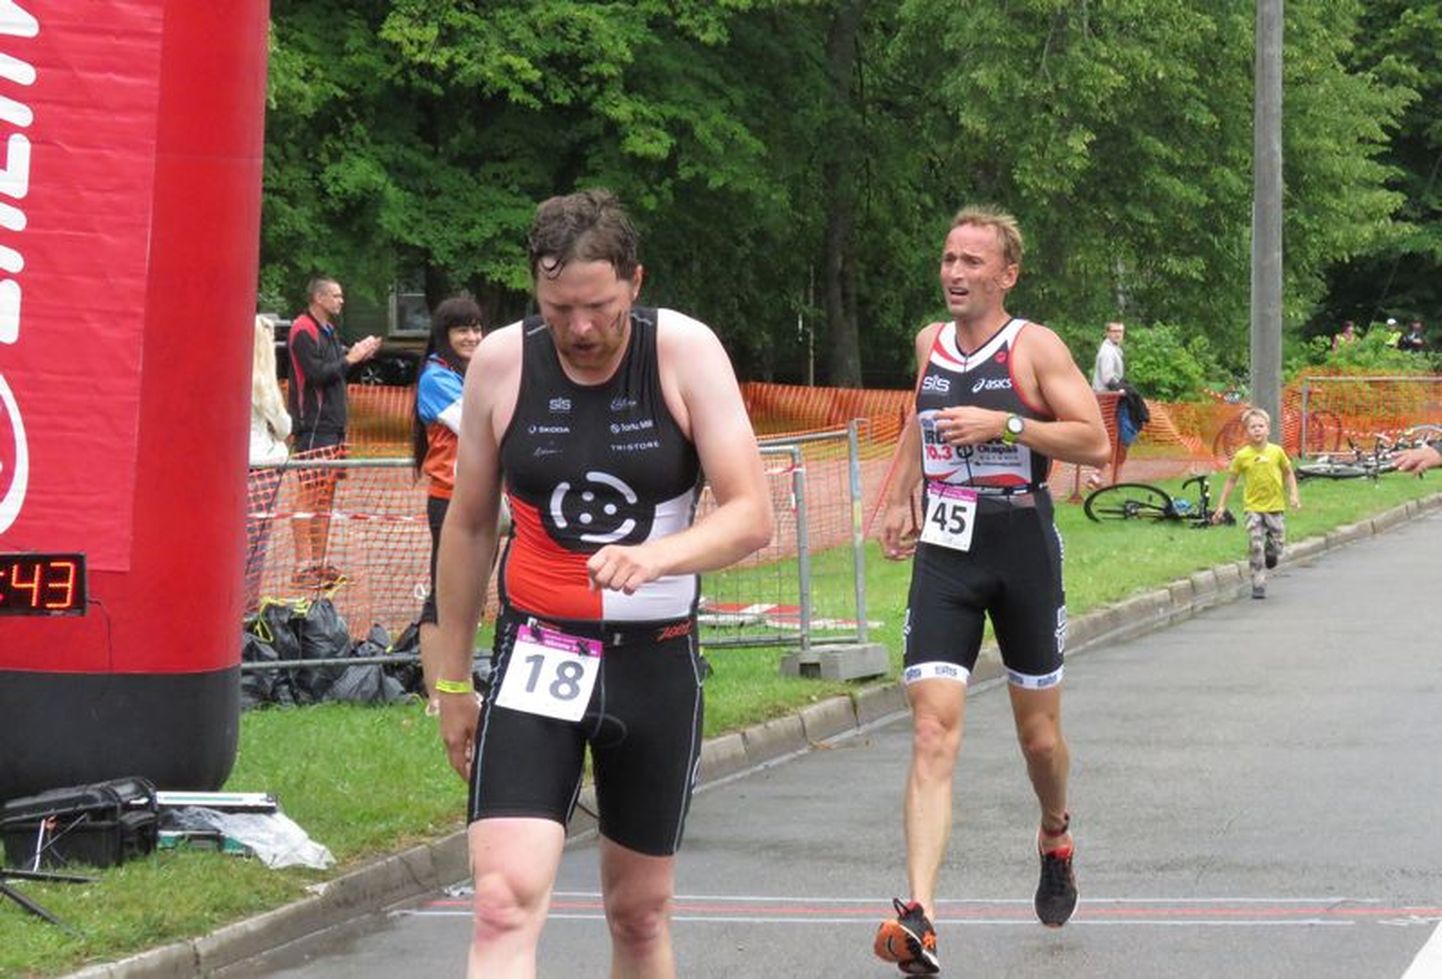 Esimene Saarde Atleedi osavõistlus toimus triatlonis, kus teiste seas võistles ka Märt Avandi (nr. 45).